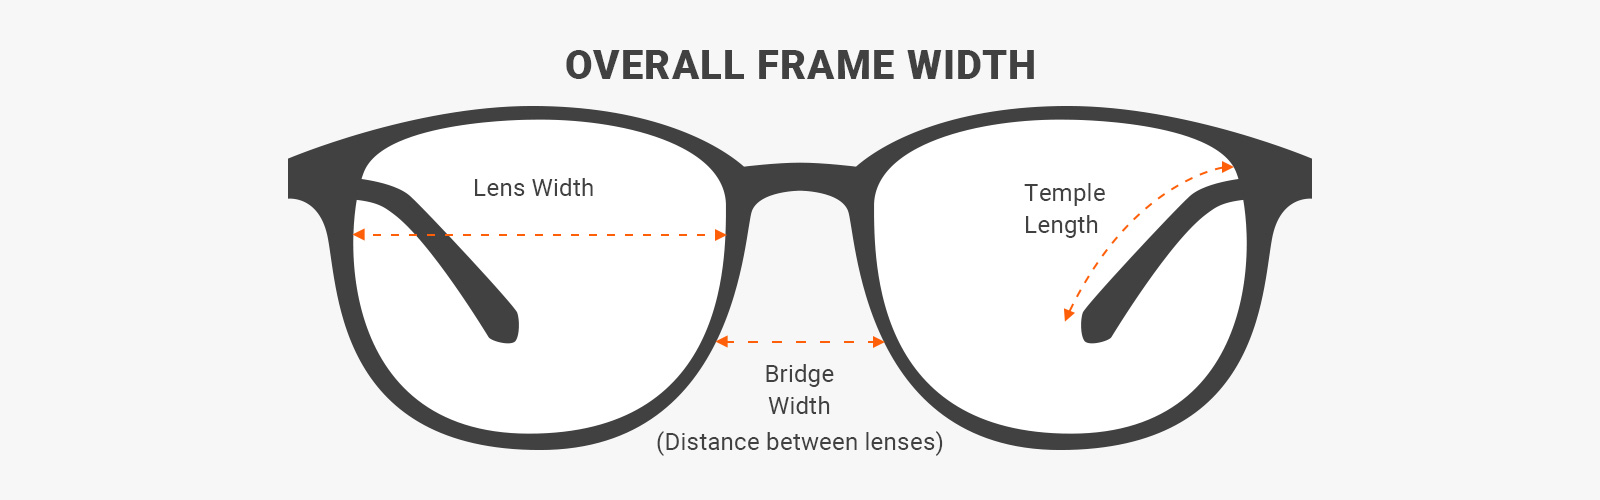 comprendre les dimensions des lunettes de soleil - quelle est la largeur des verres, la largeur du pont et la longueur des branches